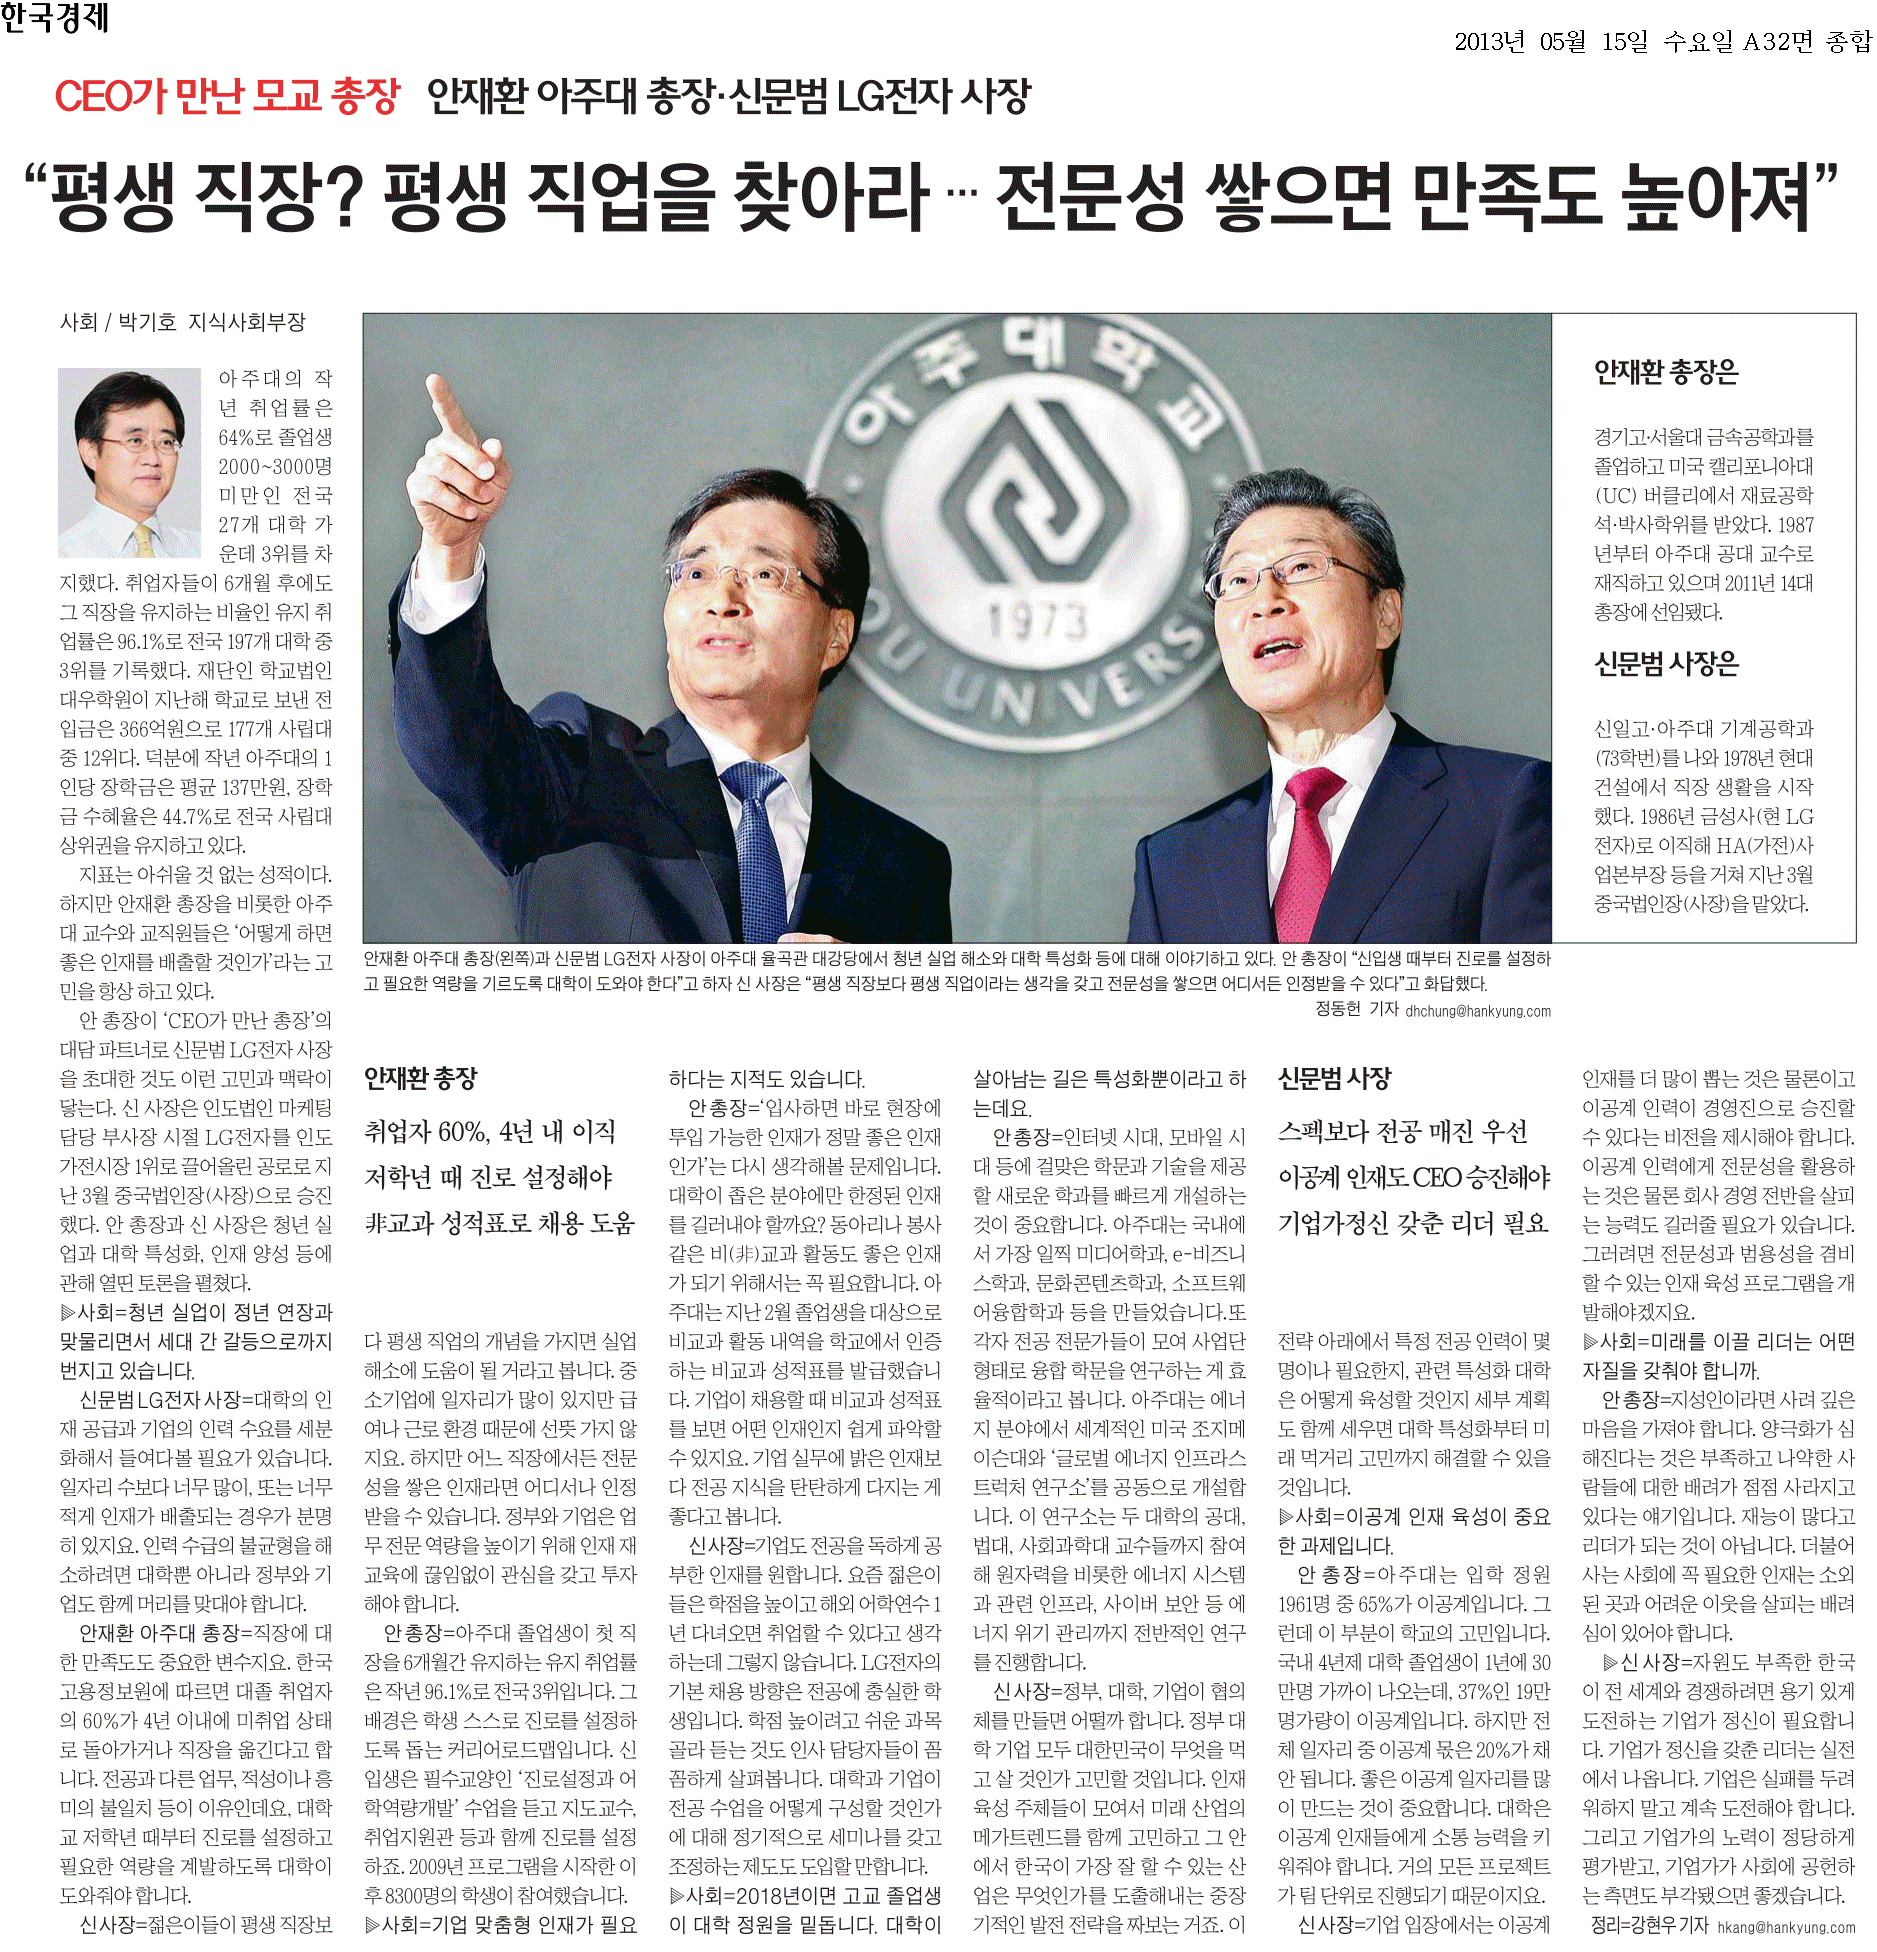 안재환 총장·신문범 LG전자 사장 대담, 한국경제신문에 게재